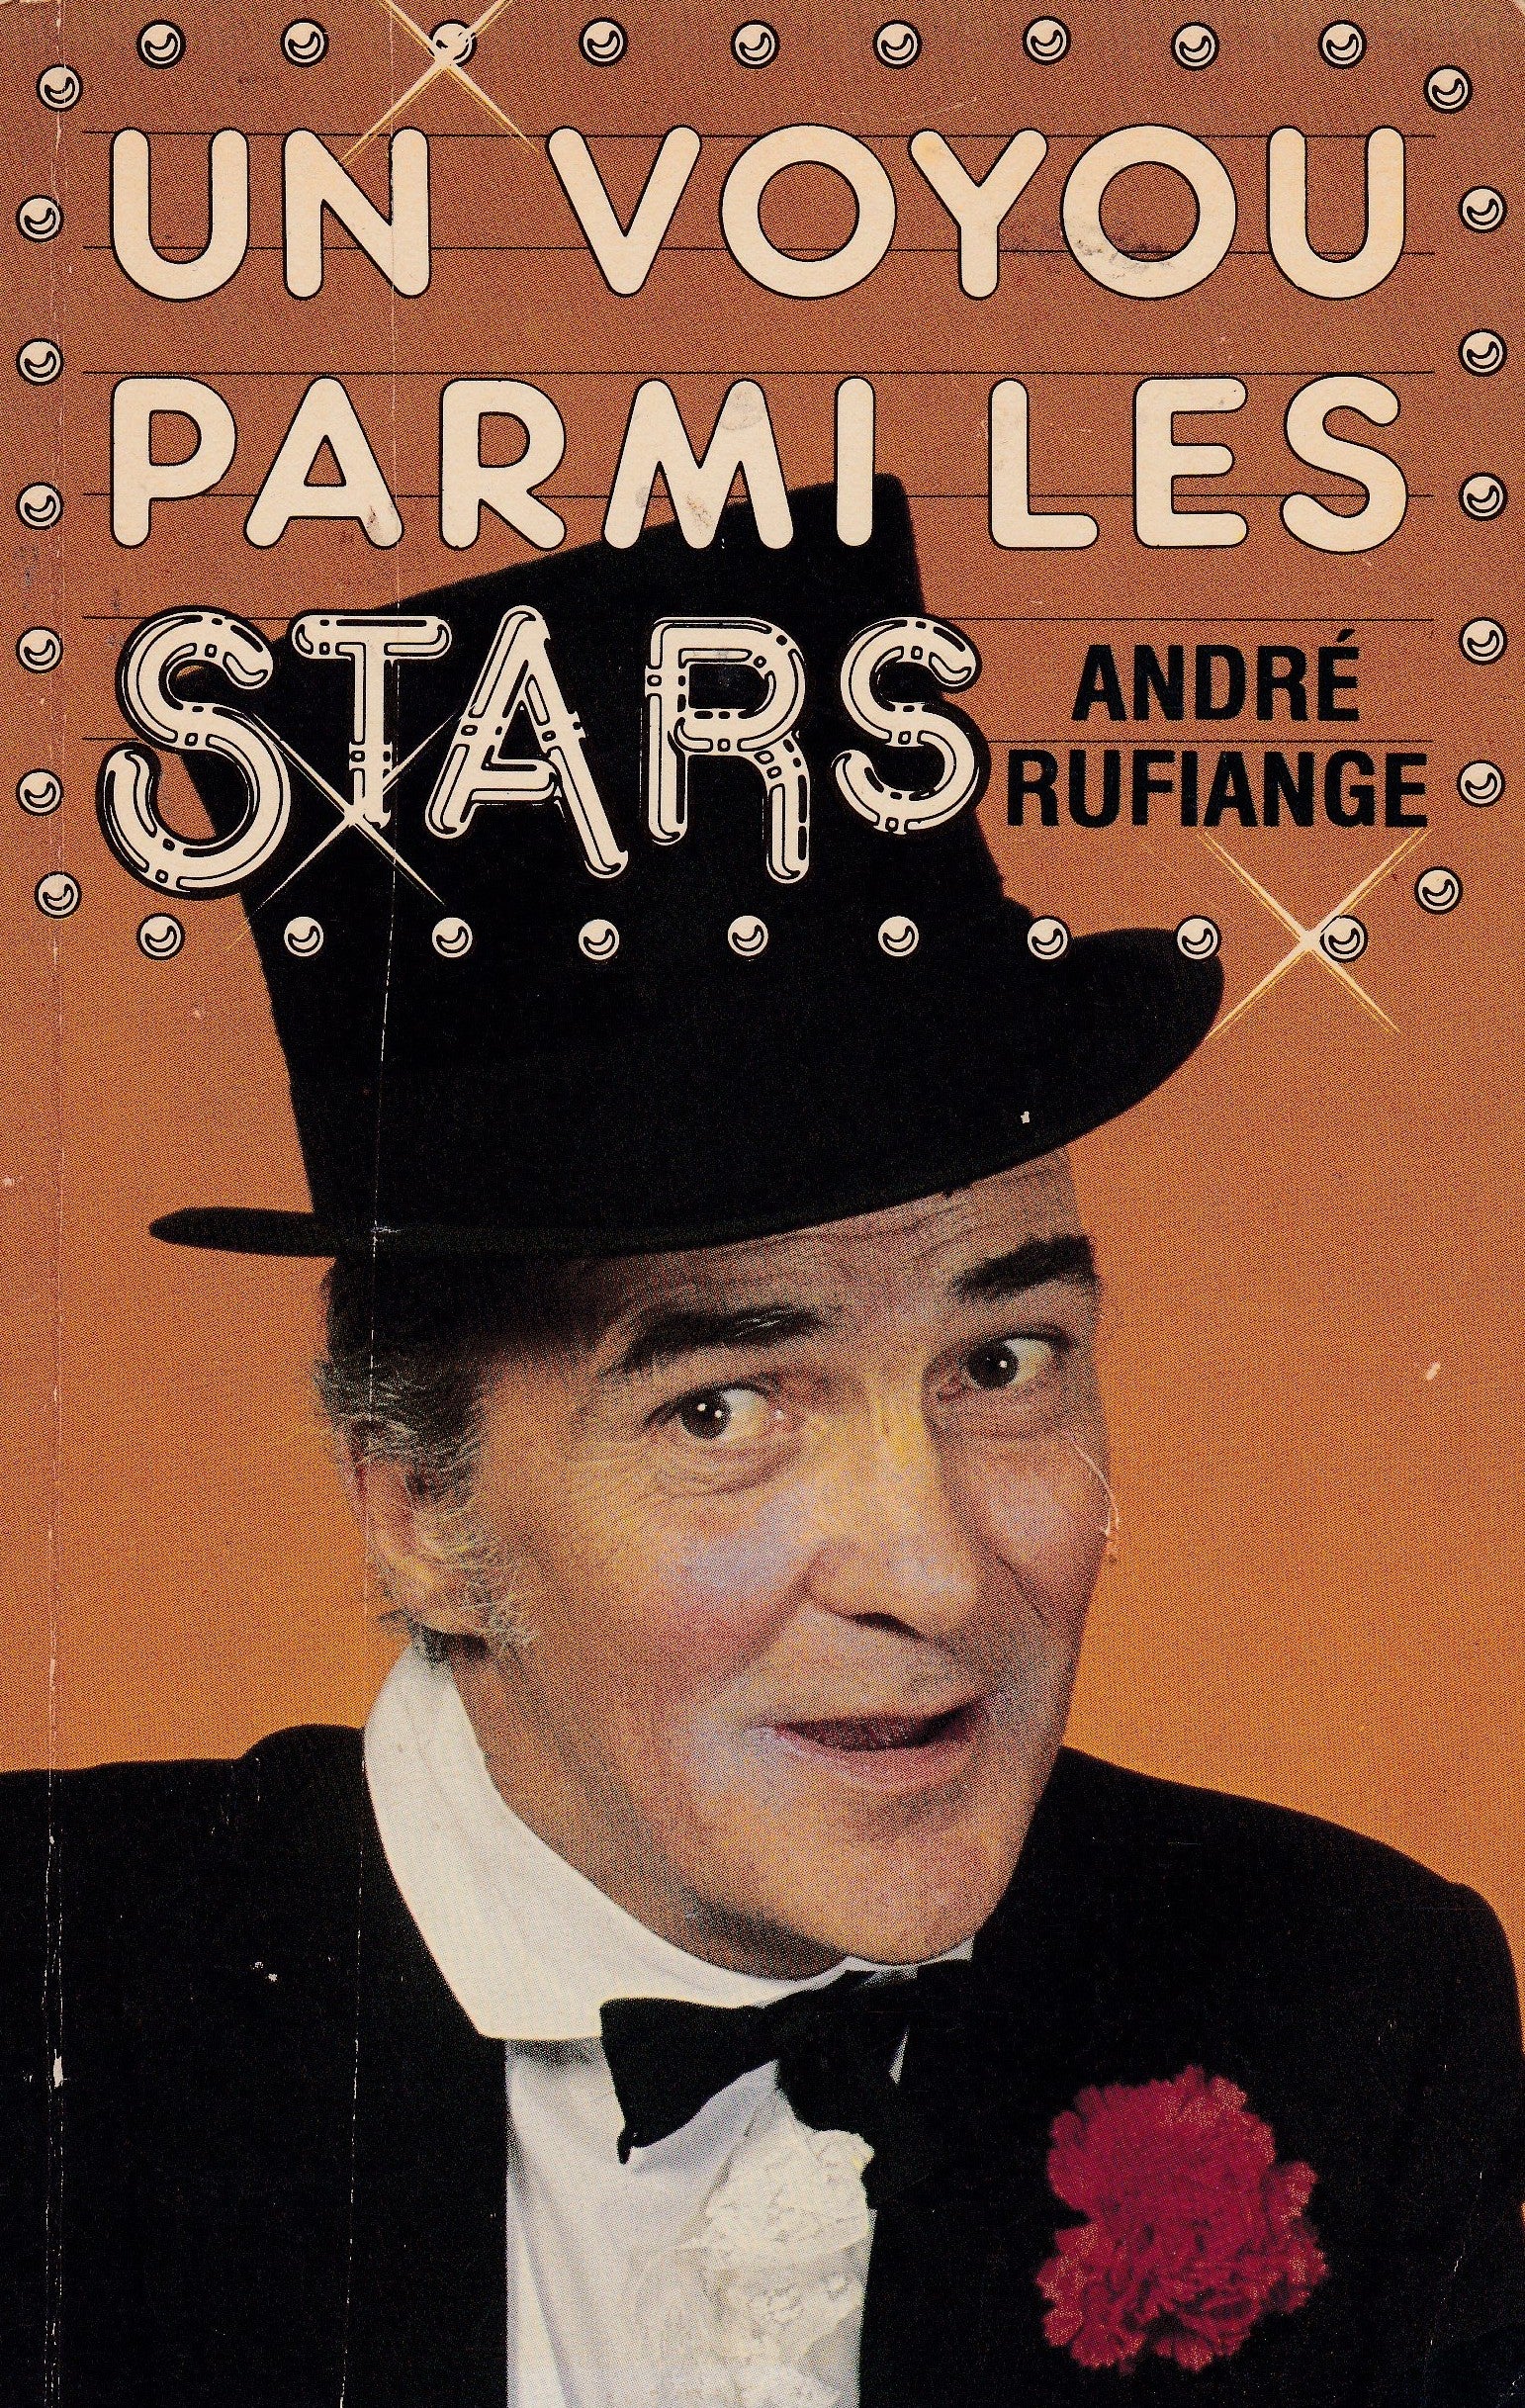 Livre ISBN 2890891259 Un voyou parmi les stars (André Rufiange)